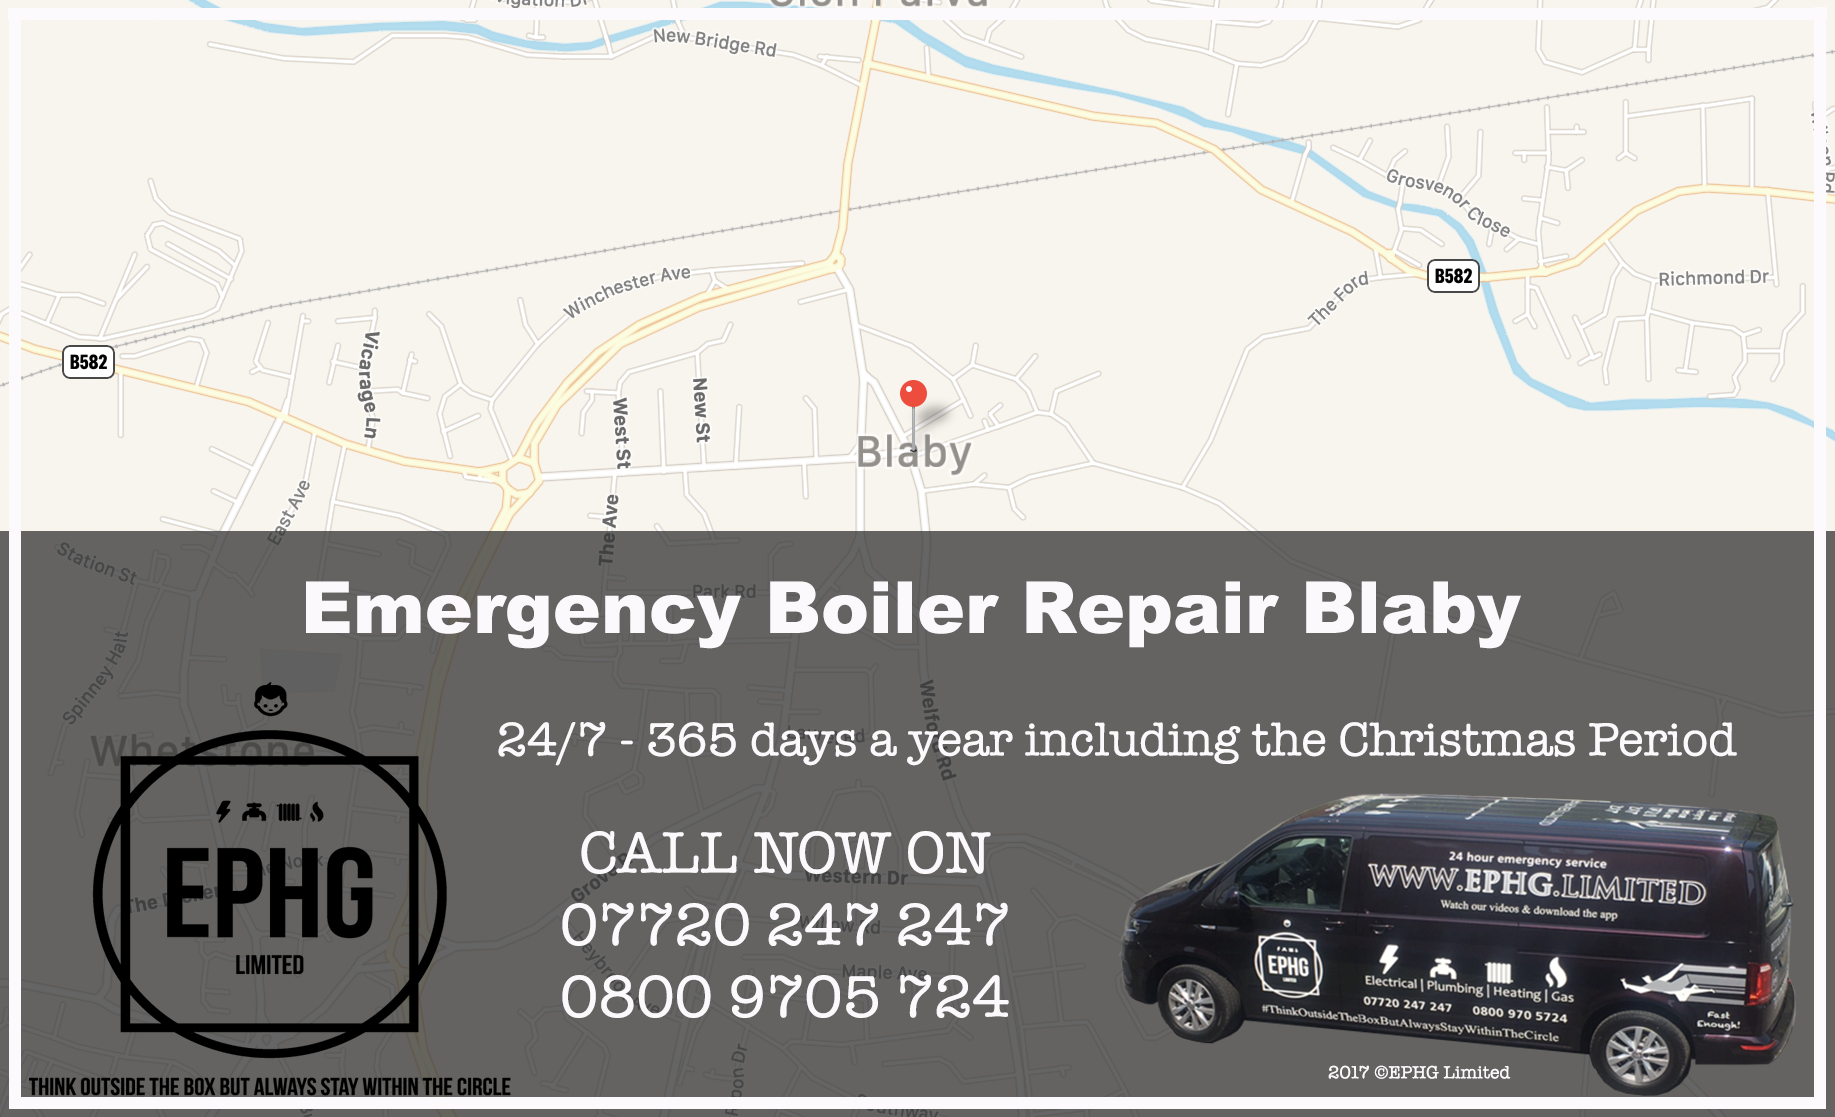 24 Hour Emergency Boiler Repair Blaby